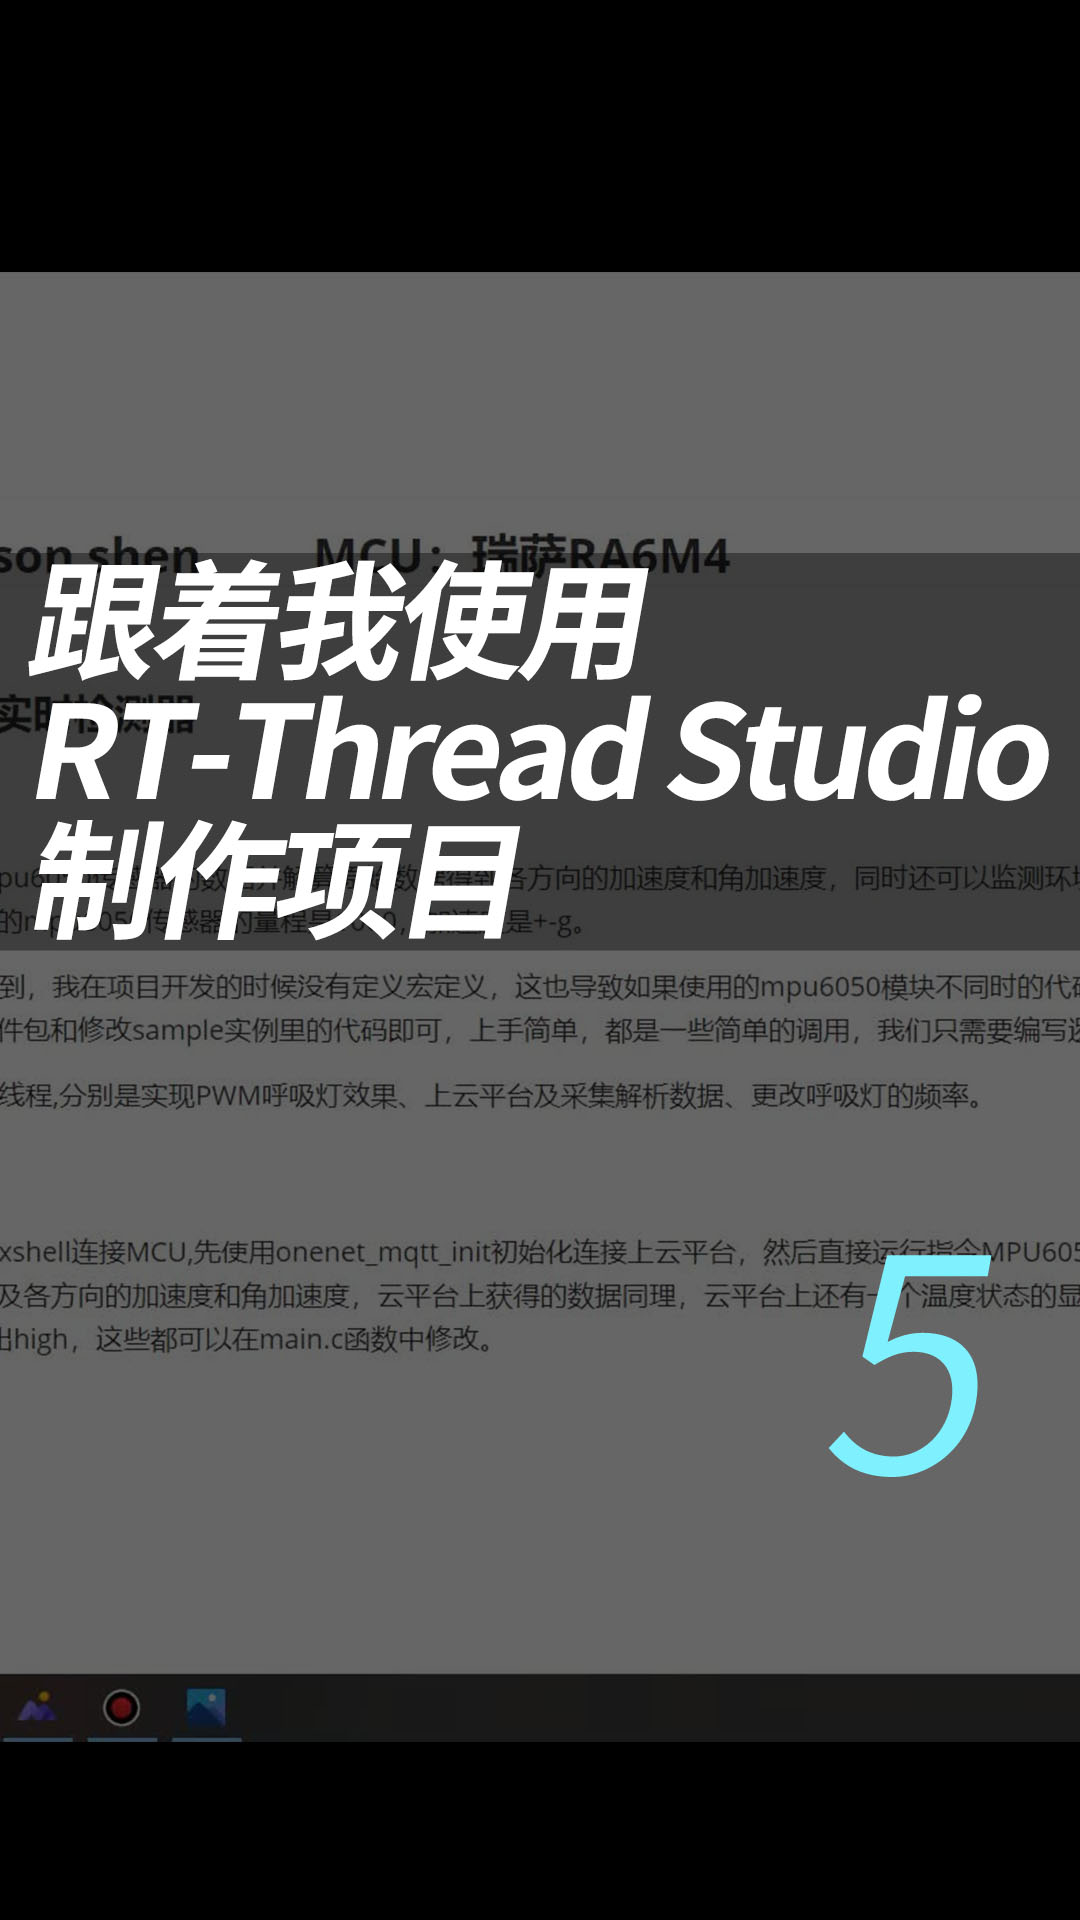 跟着我使用RT-Thread Studio制作项目，简单且高级，有手就行  5.利用软件包获取mpu6050原